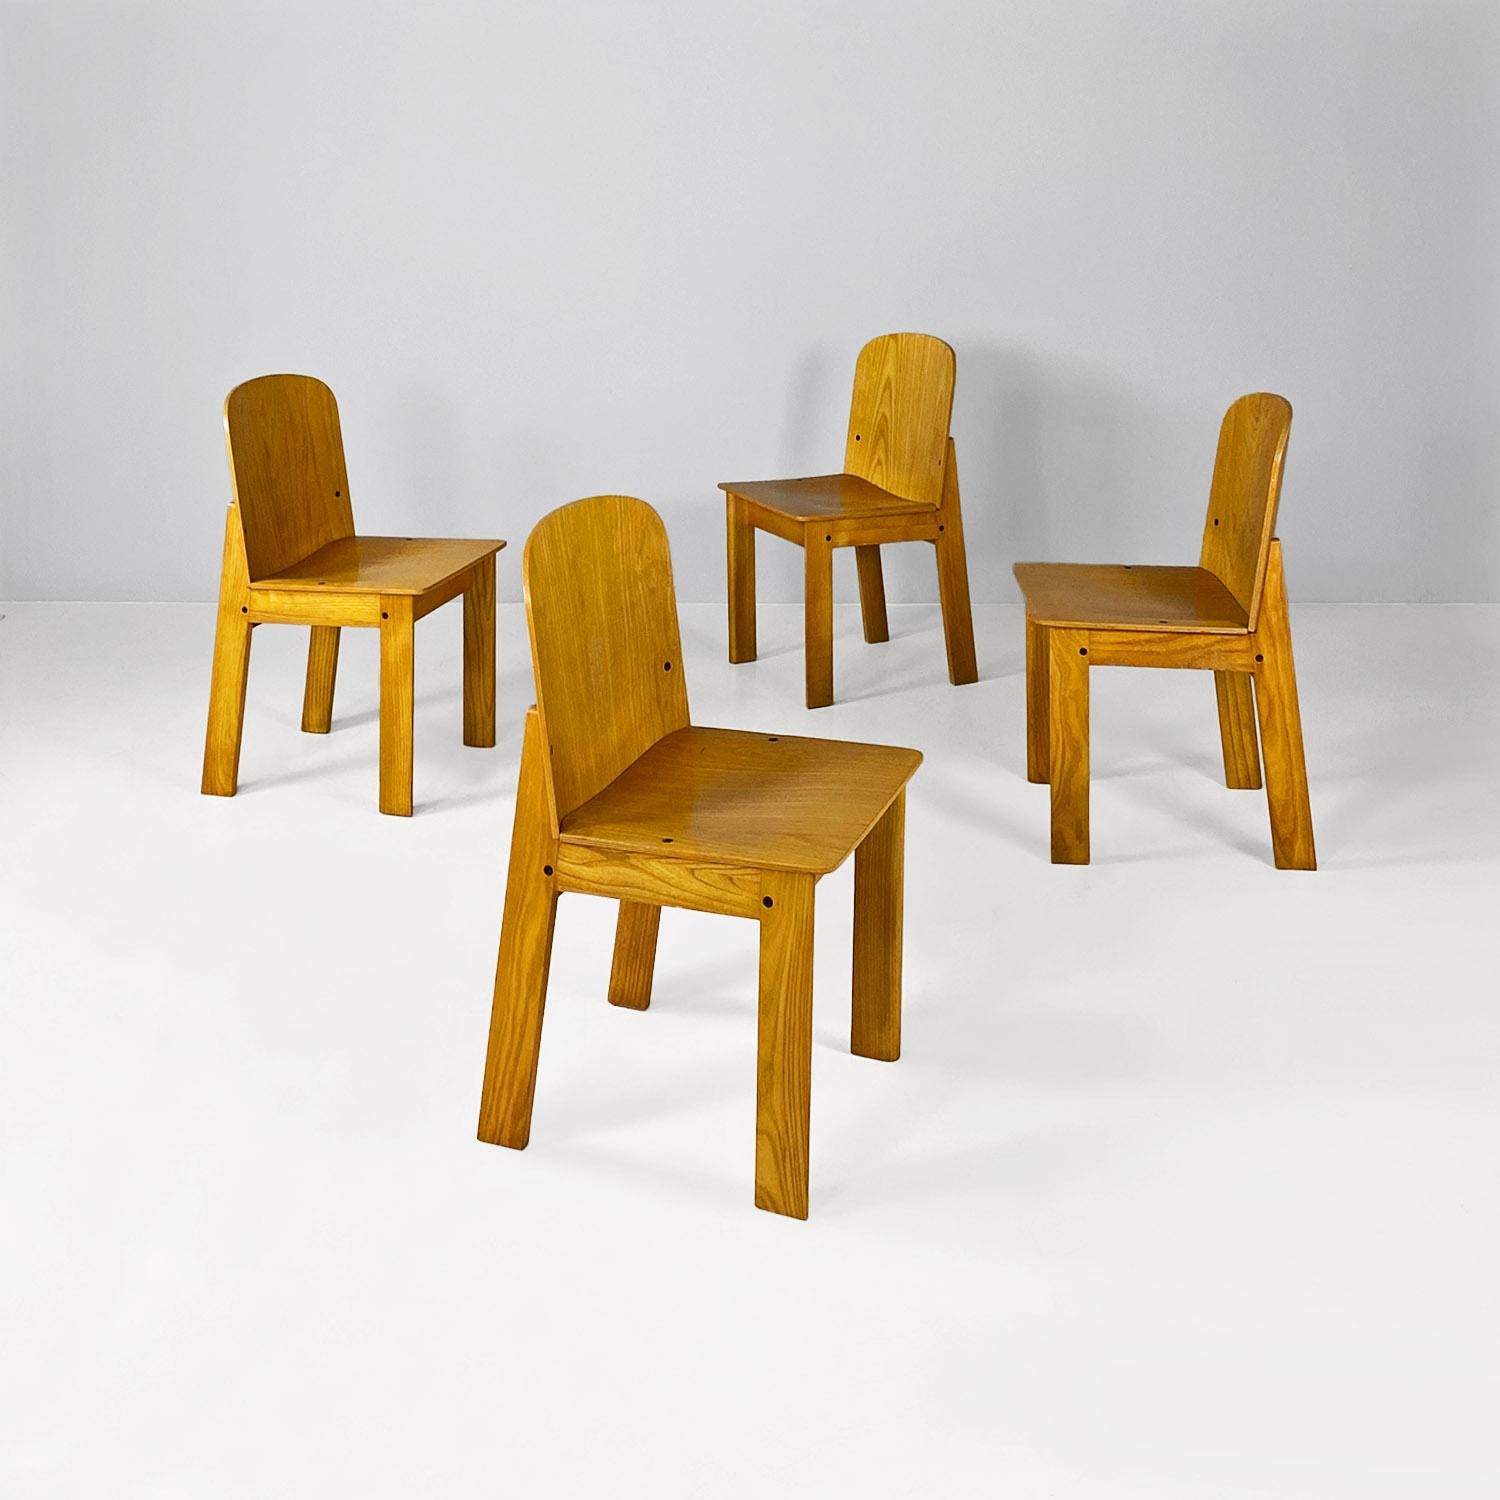 Ensemble moderne italien de quatre chaises en bois massif, années 1980
Ensemble de quatre chaises dont la structure est entièrement en bois massif.
1980 environ.
Bonnes conditions
Dimensions en 43x46x76h cm et siège 42h cm
Non vendu